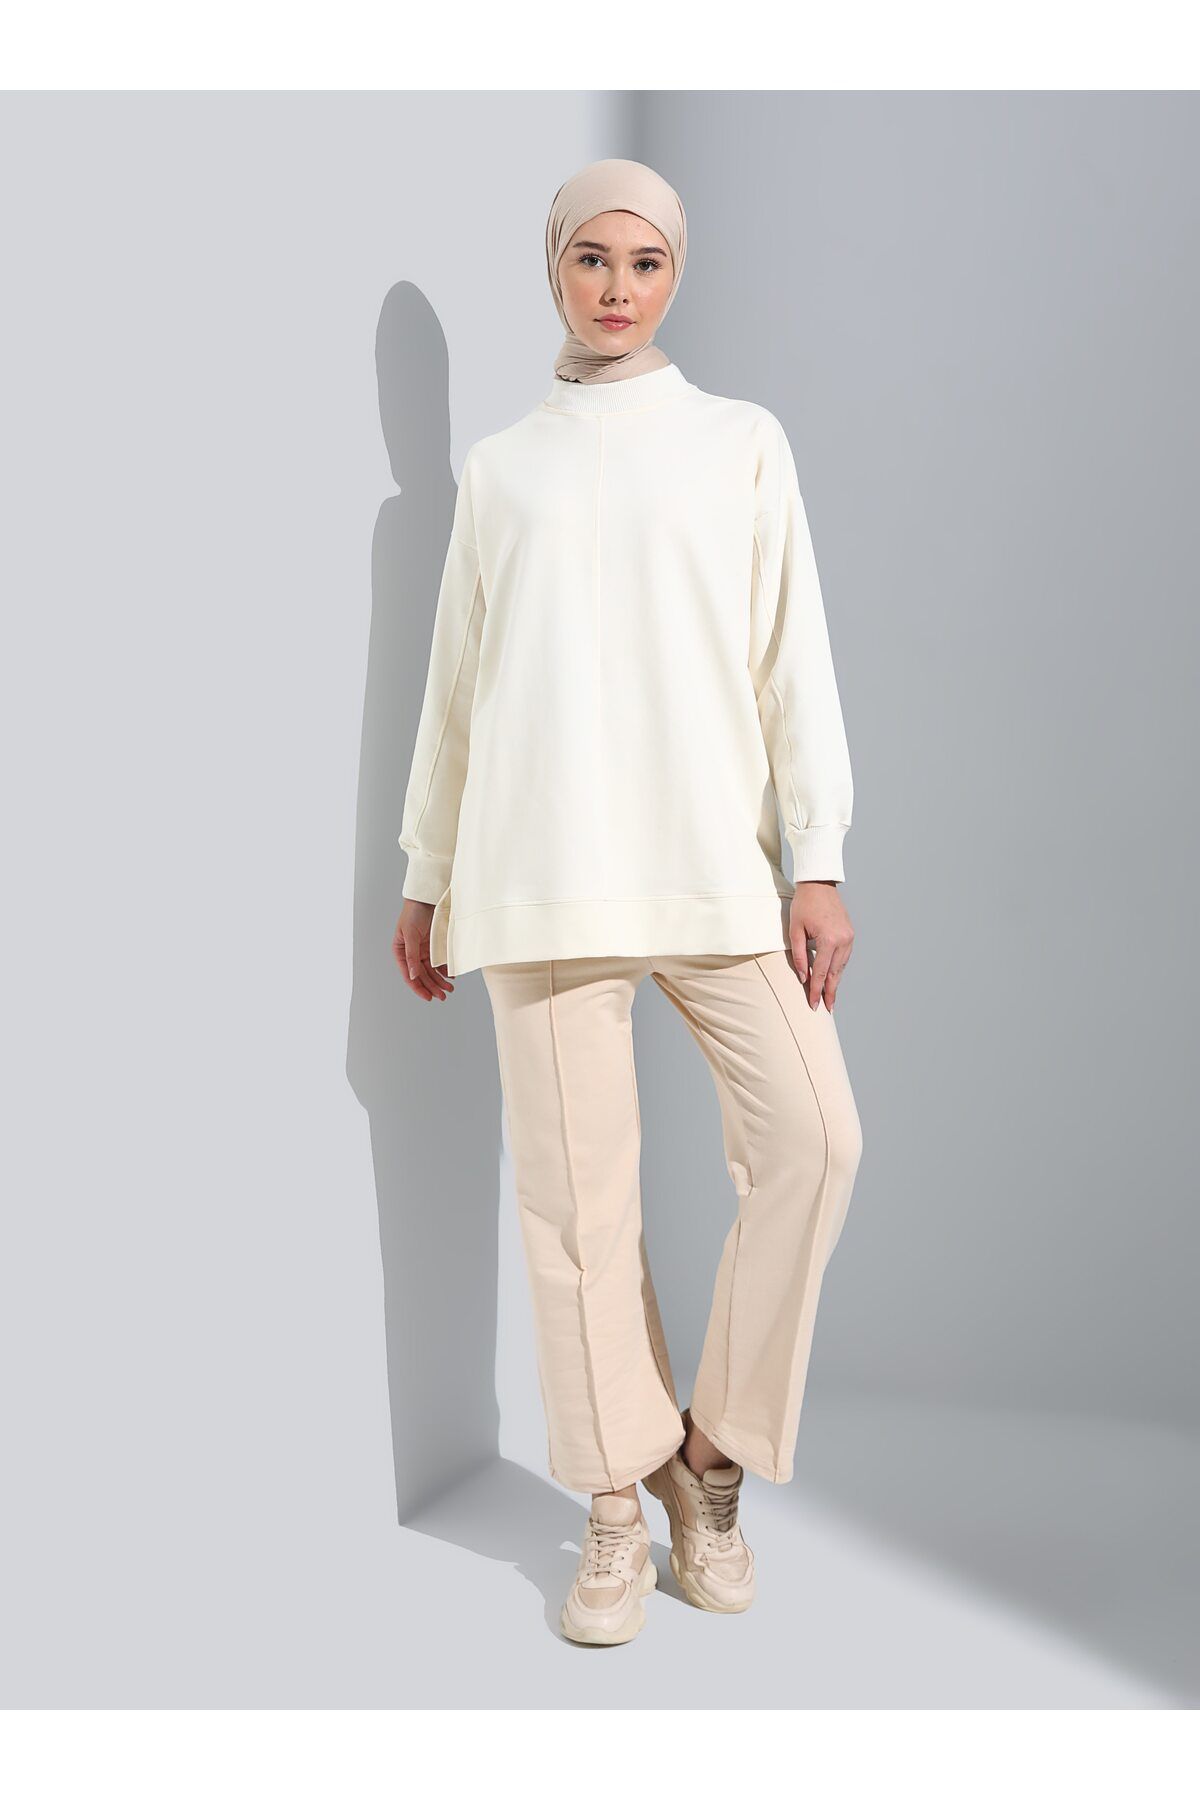 Refka Dikiş Detaylı Dik Yaka Sweatshirt - Kırık Beyaz - Basic